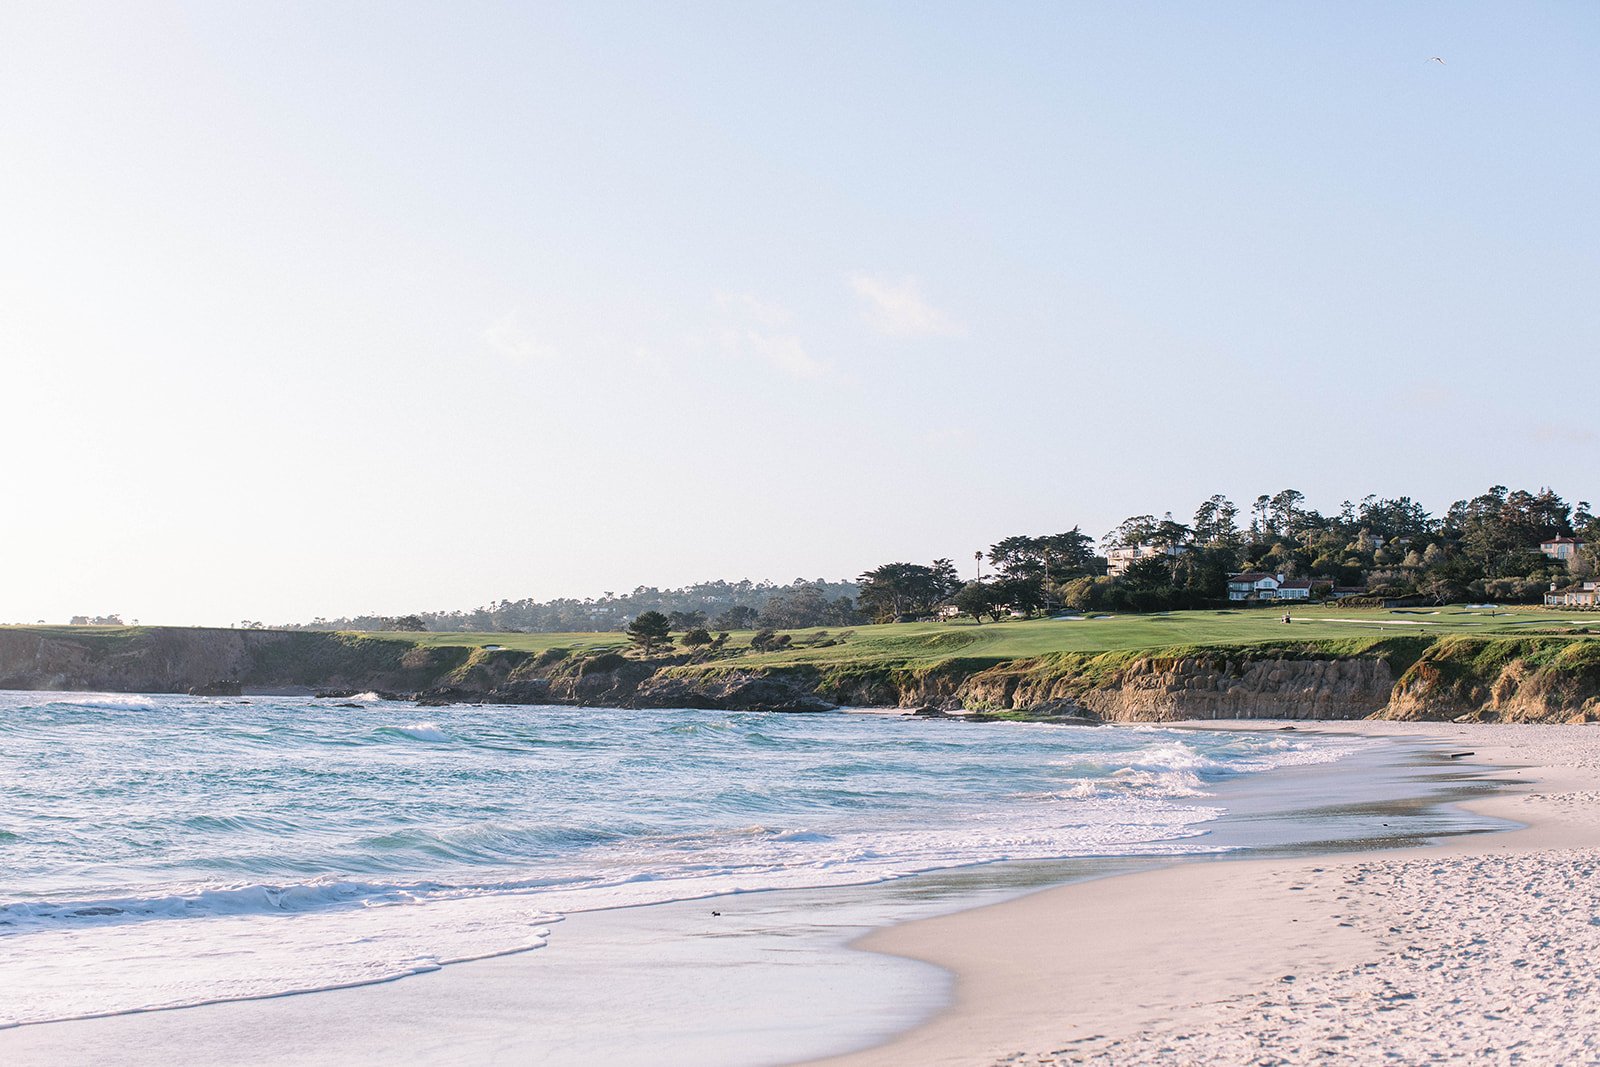 Pebble beach golf course from Carmel Beach